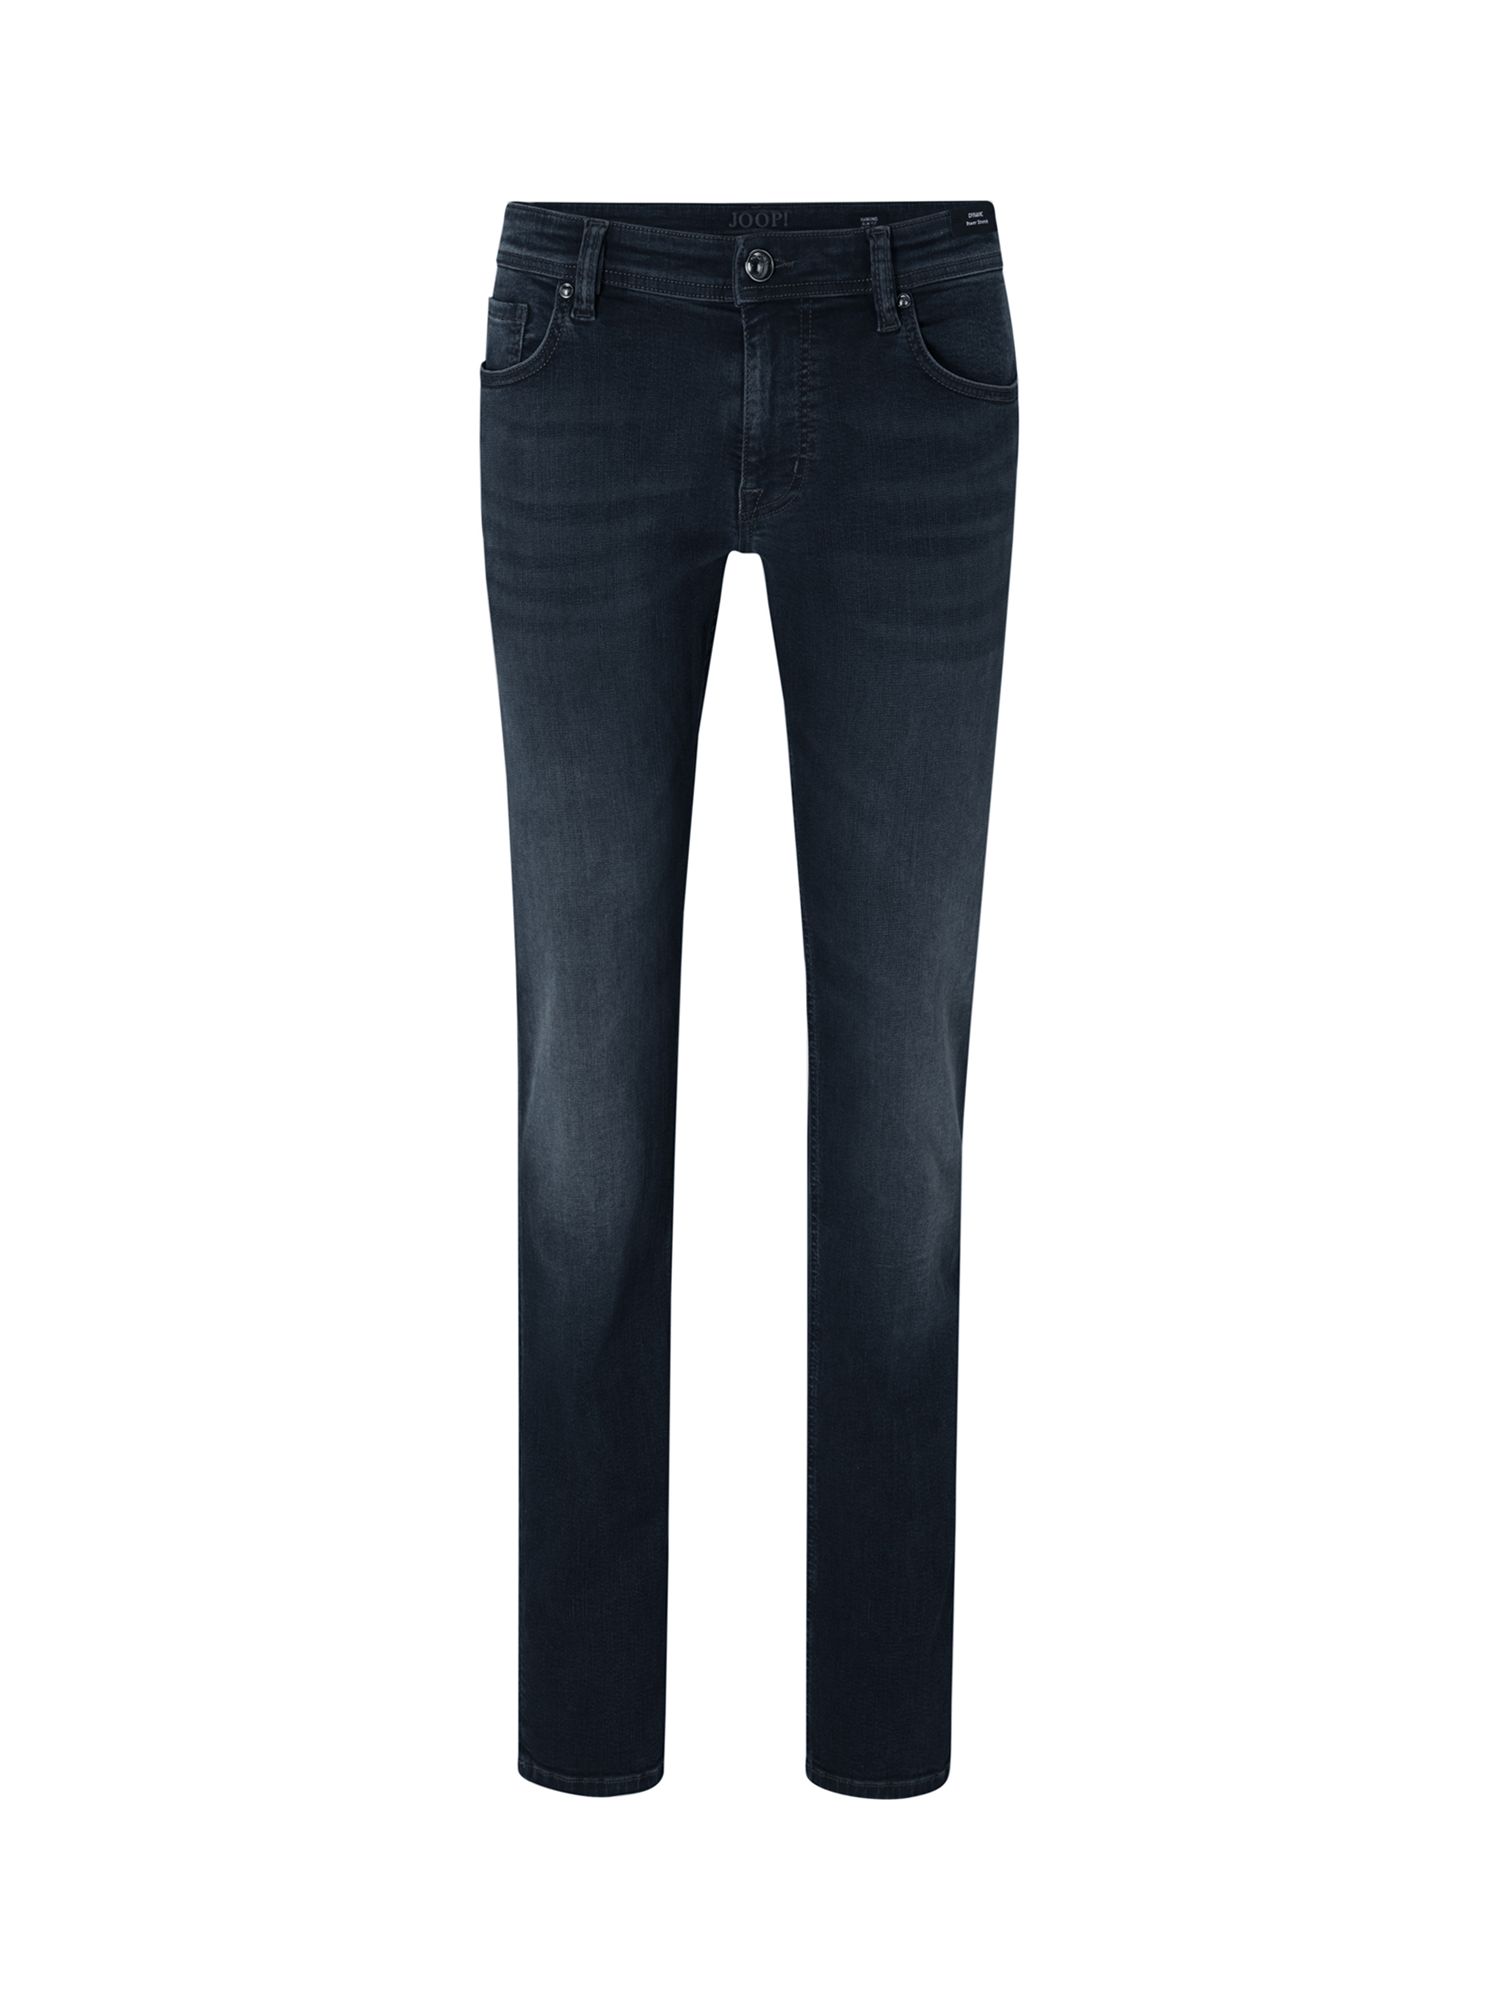 Buy JOOP! Hamond Slim Fit Jeans, Medium Blue Online at johnlewis.com